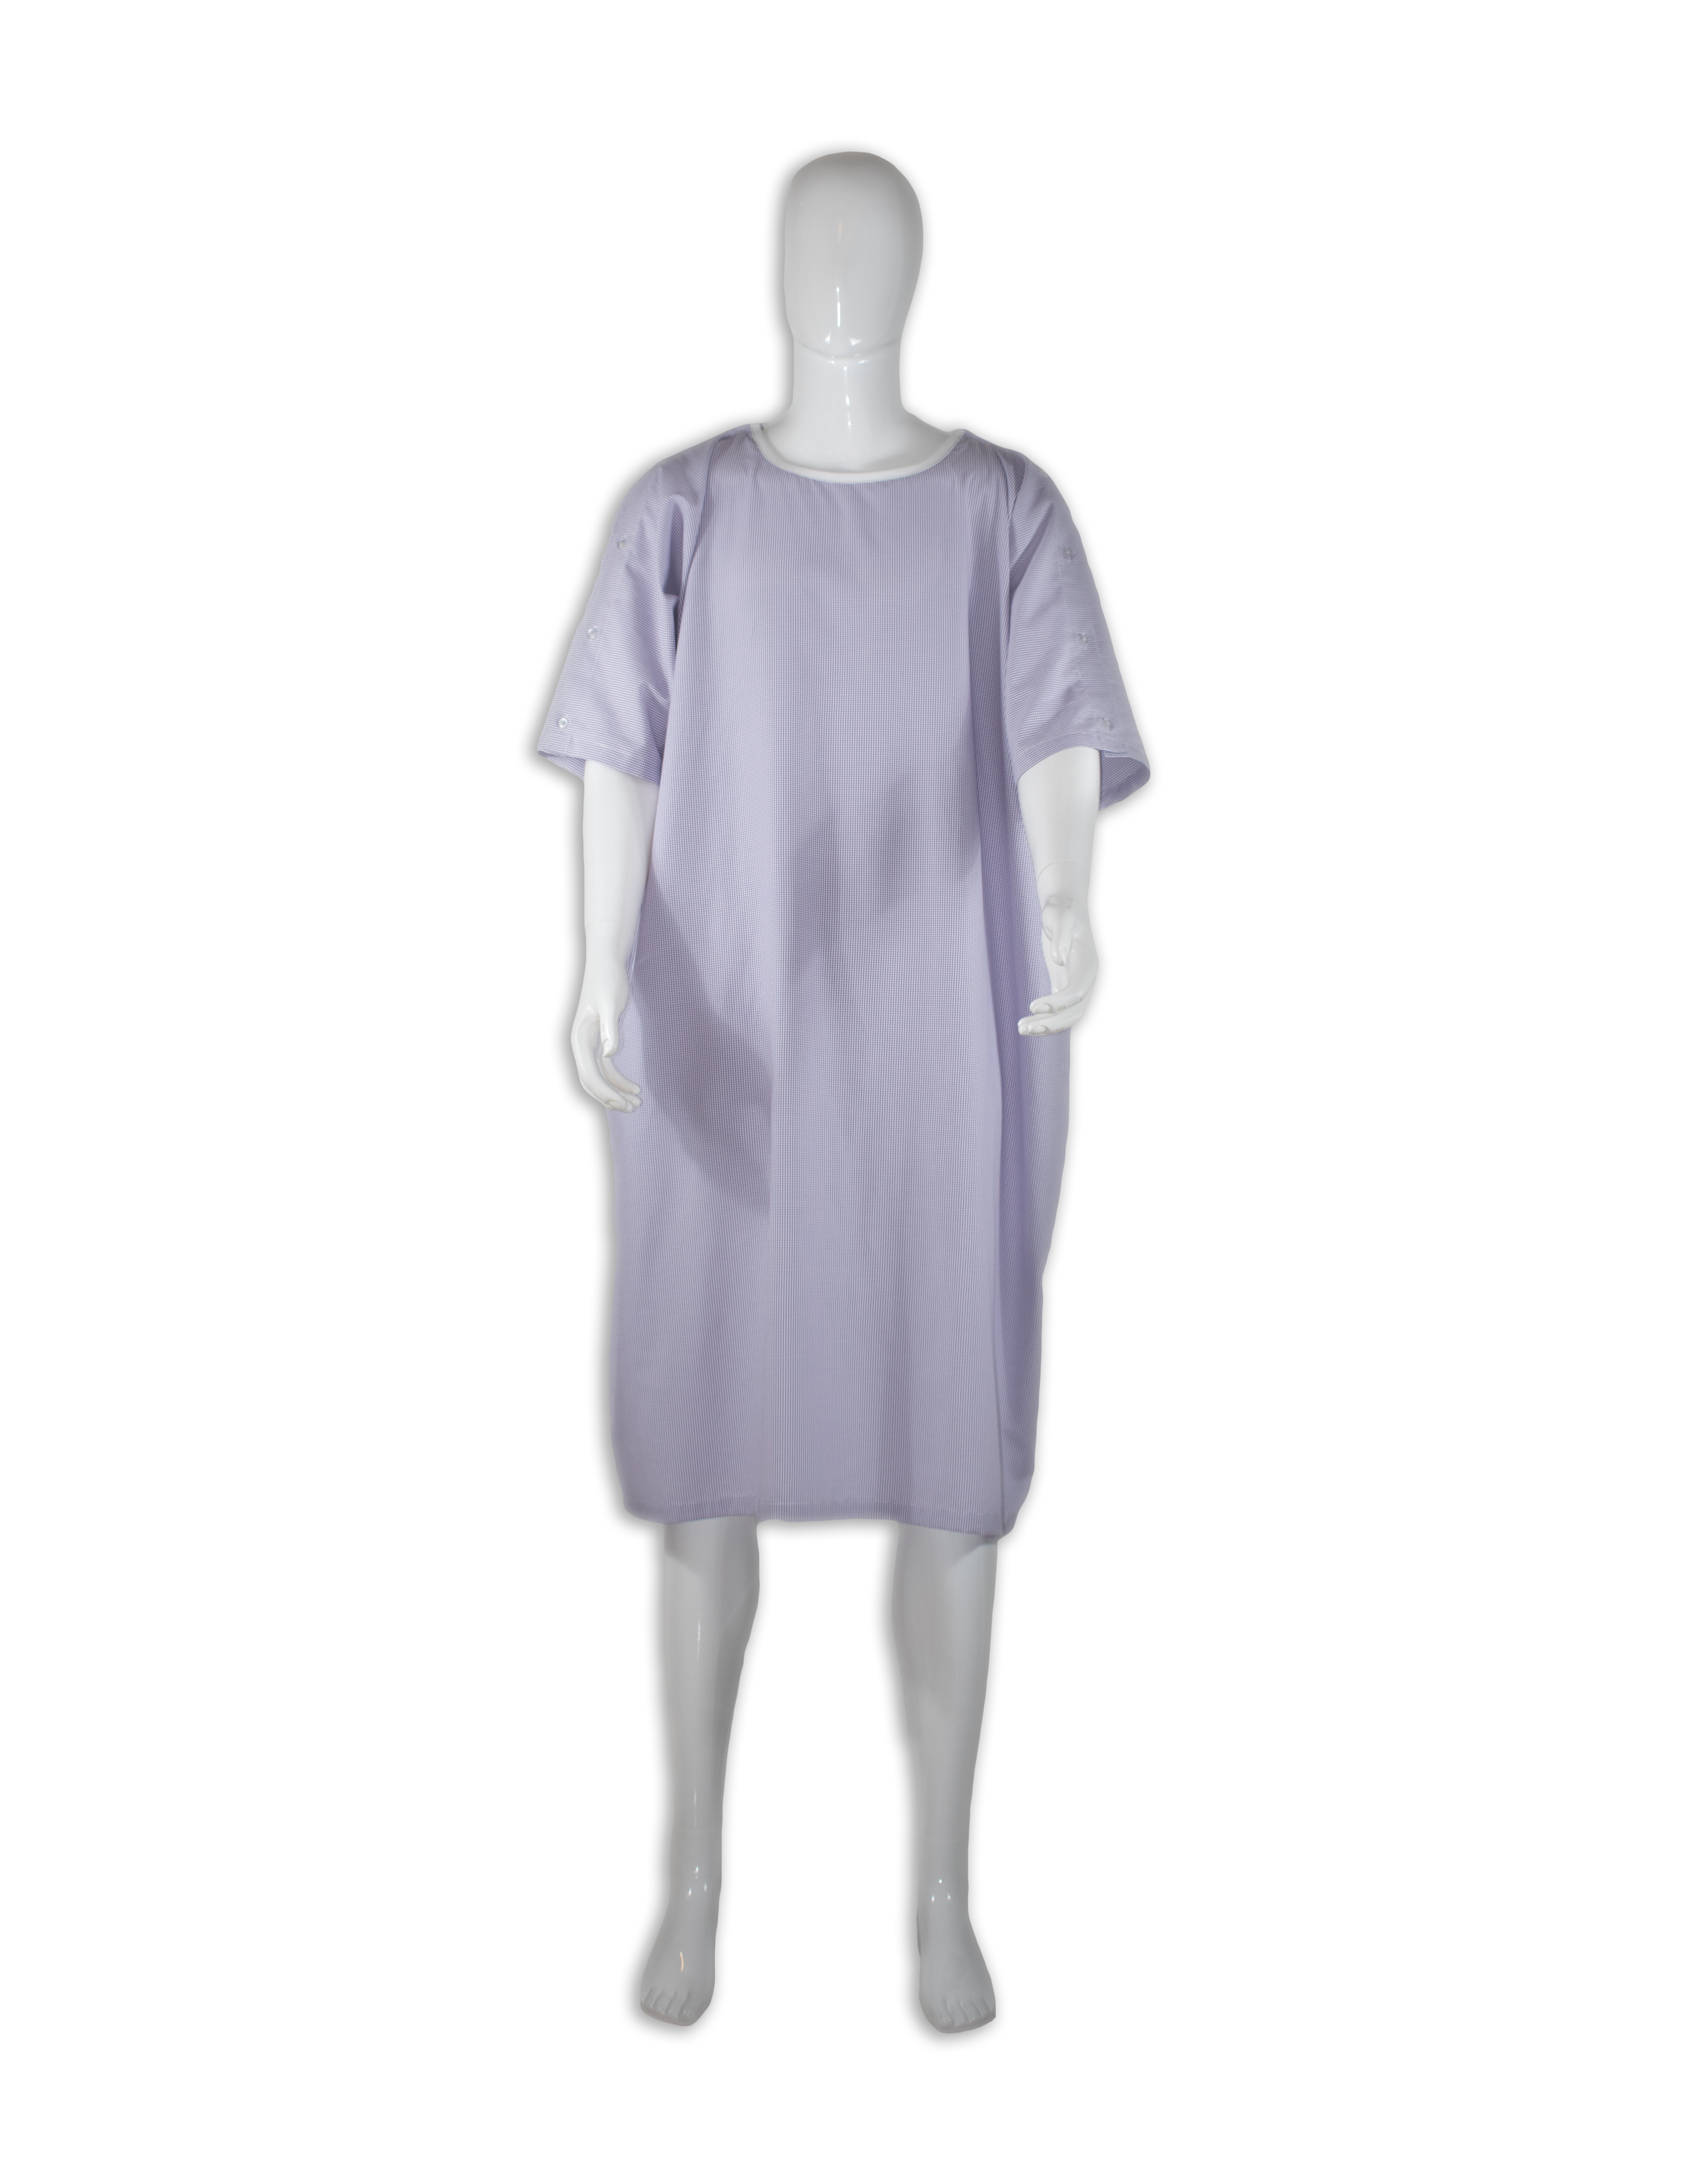 Patient gown, 2